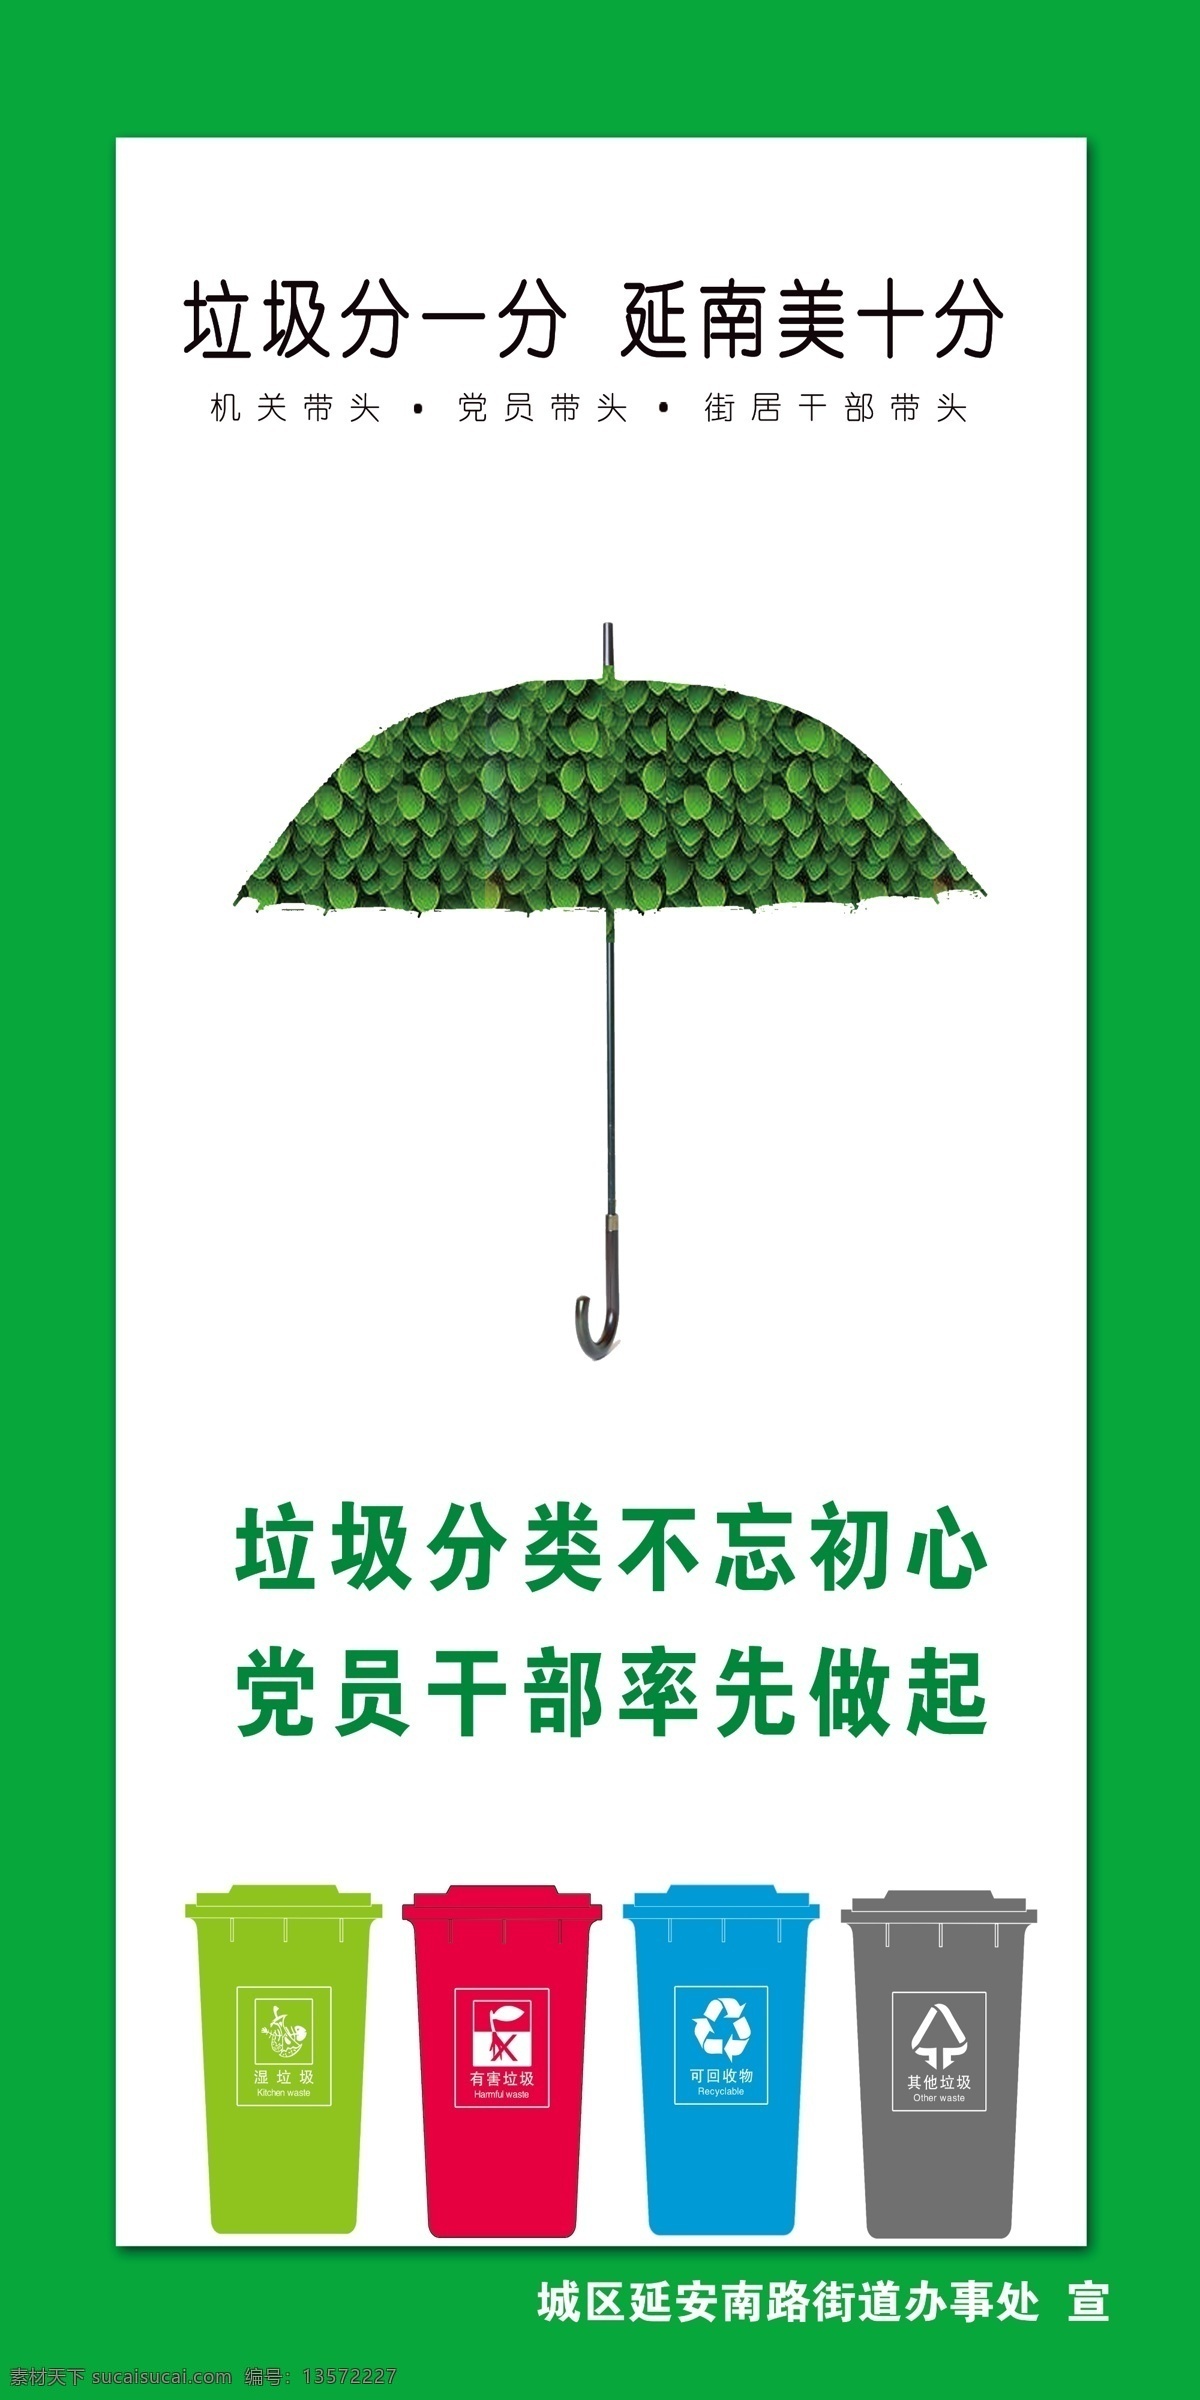 垃圾分类 垃 环保漫画 垃圾桶 垃圾分类系列 绿色雨伞 绿底色 环保制度 展板 海报 分层